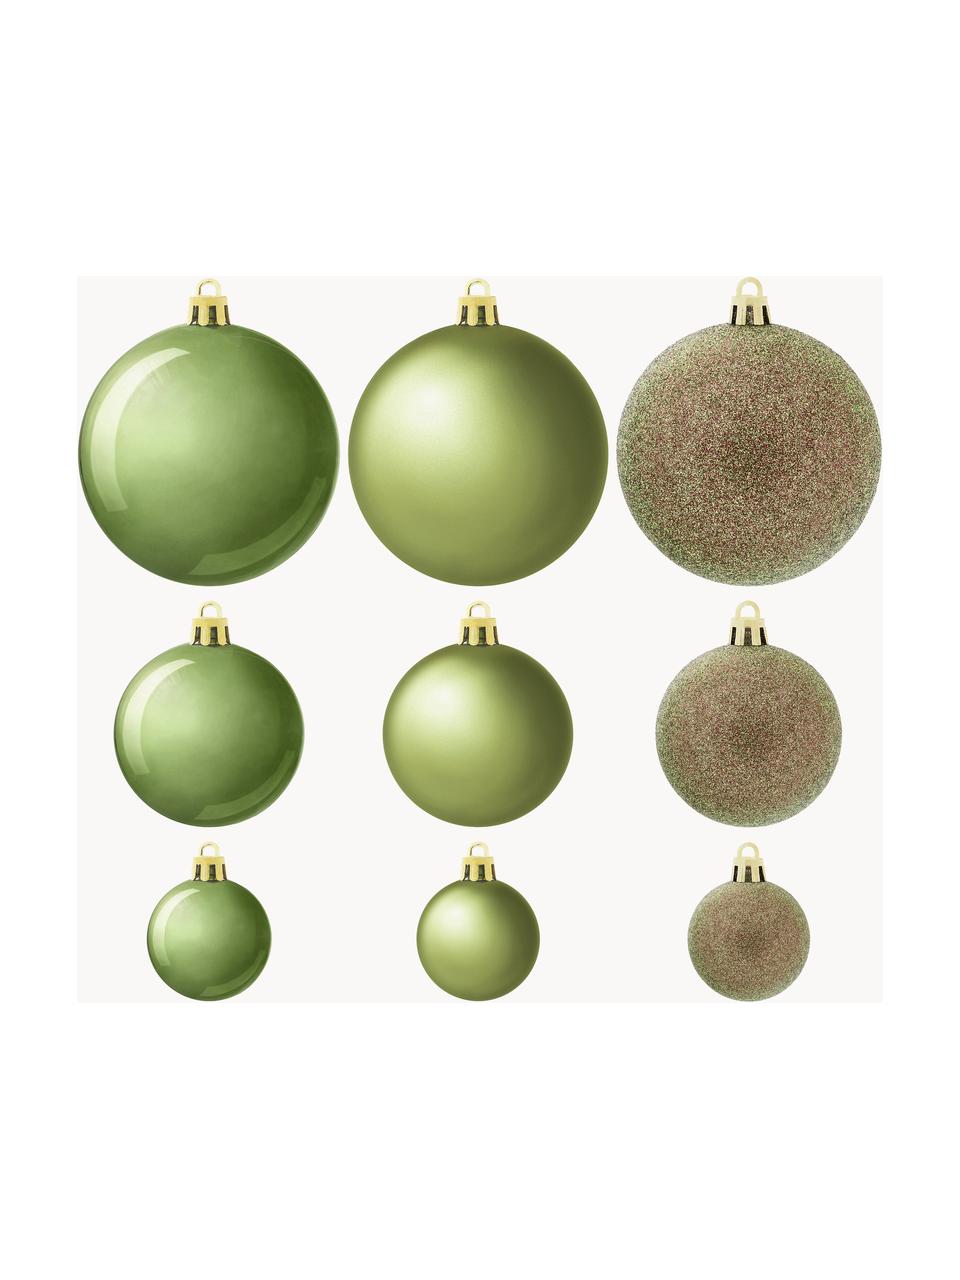 Sada nerozbitných vánočních ozdob Natalie, 46 dílů, Umělá hmota, Tmavě zelená, Sada s různými velikostmi